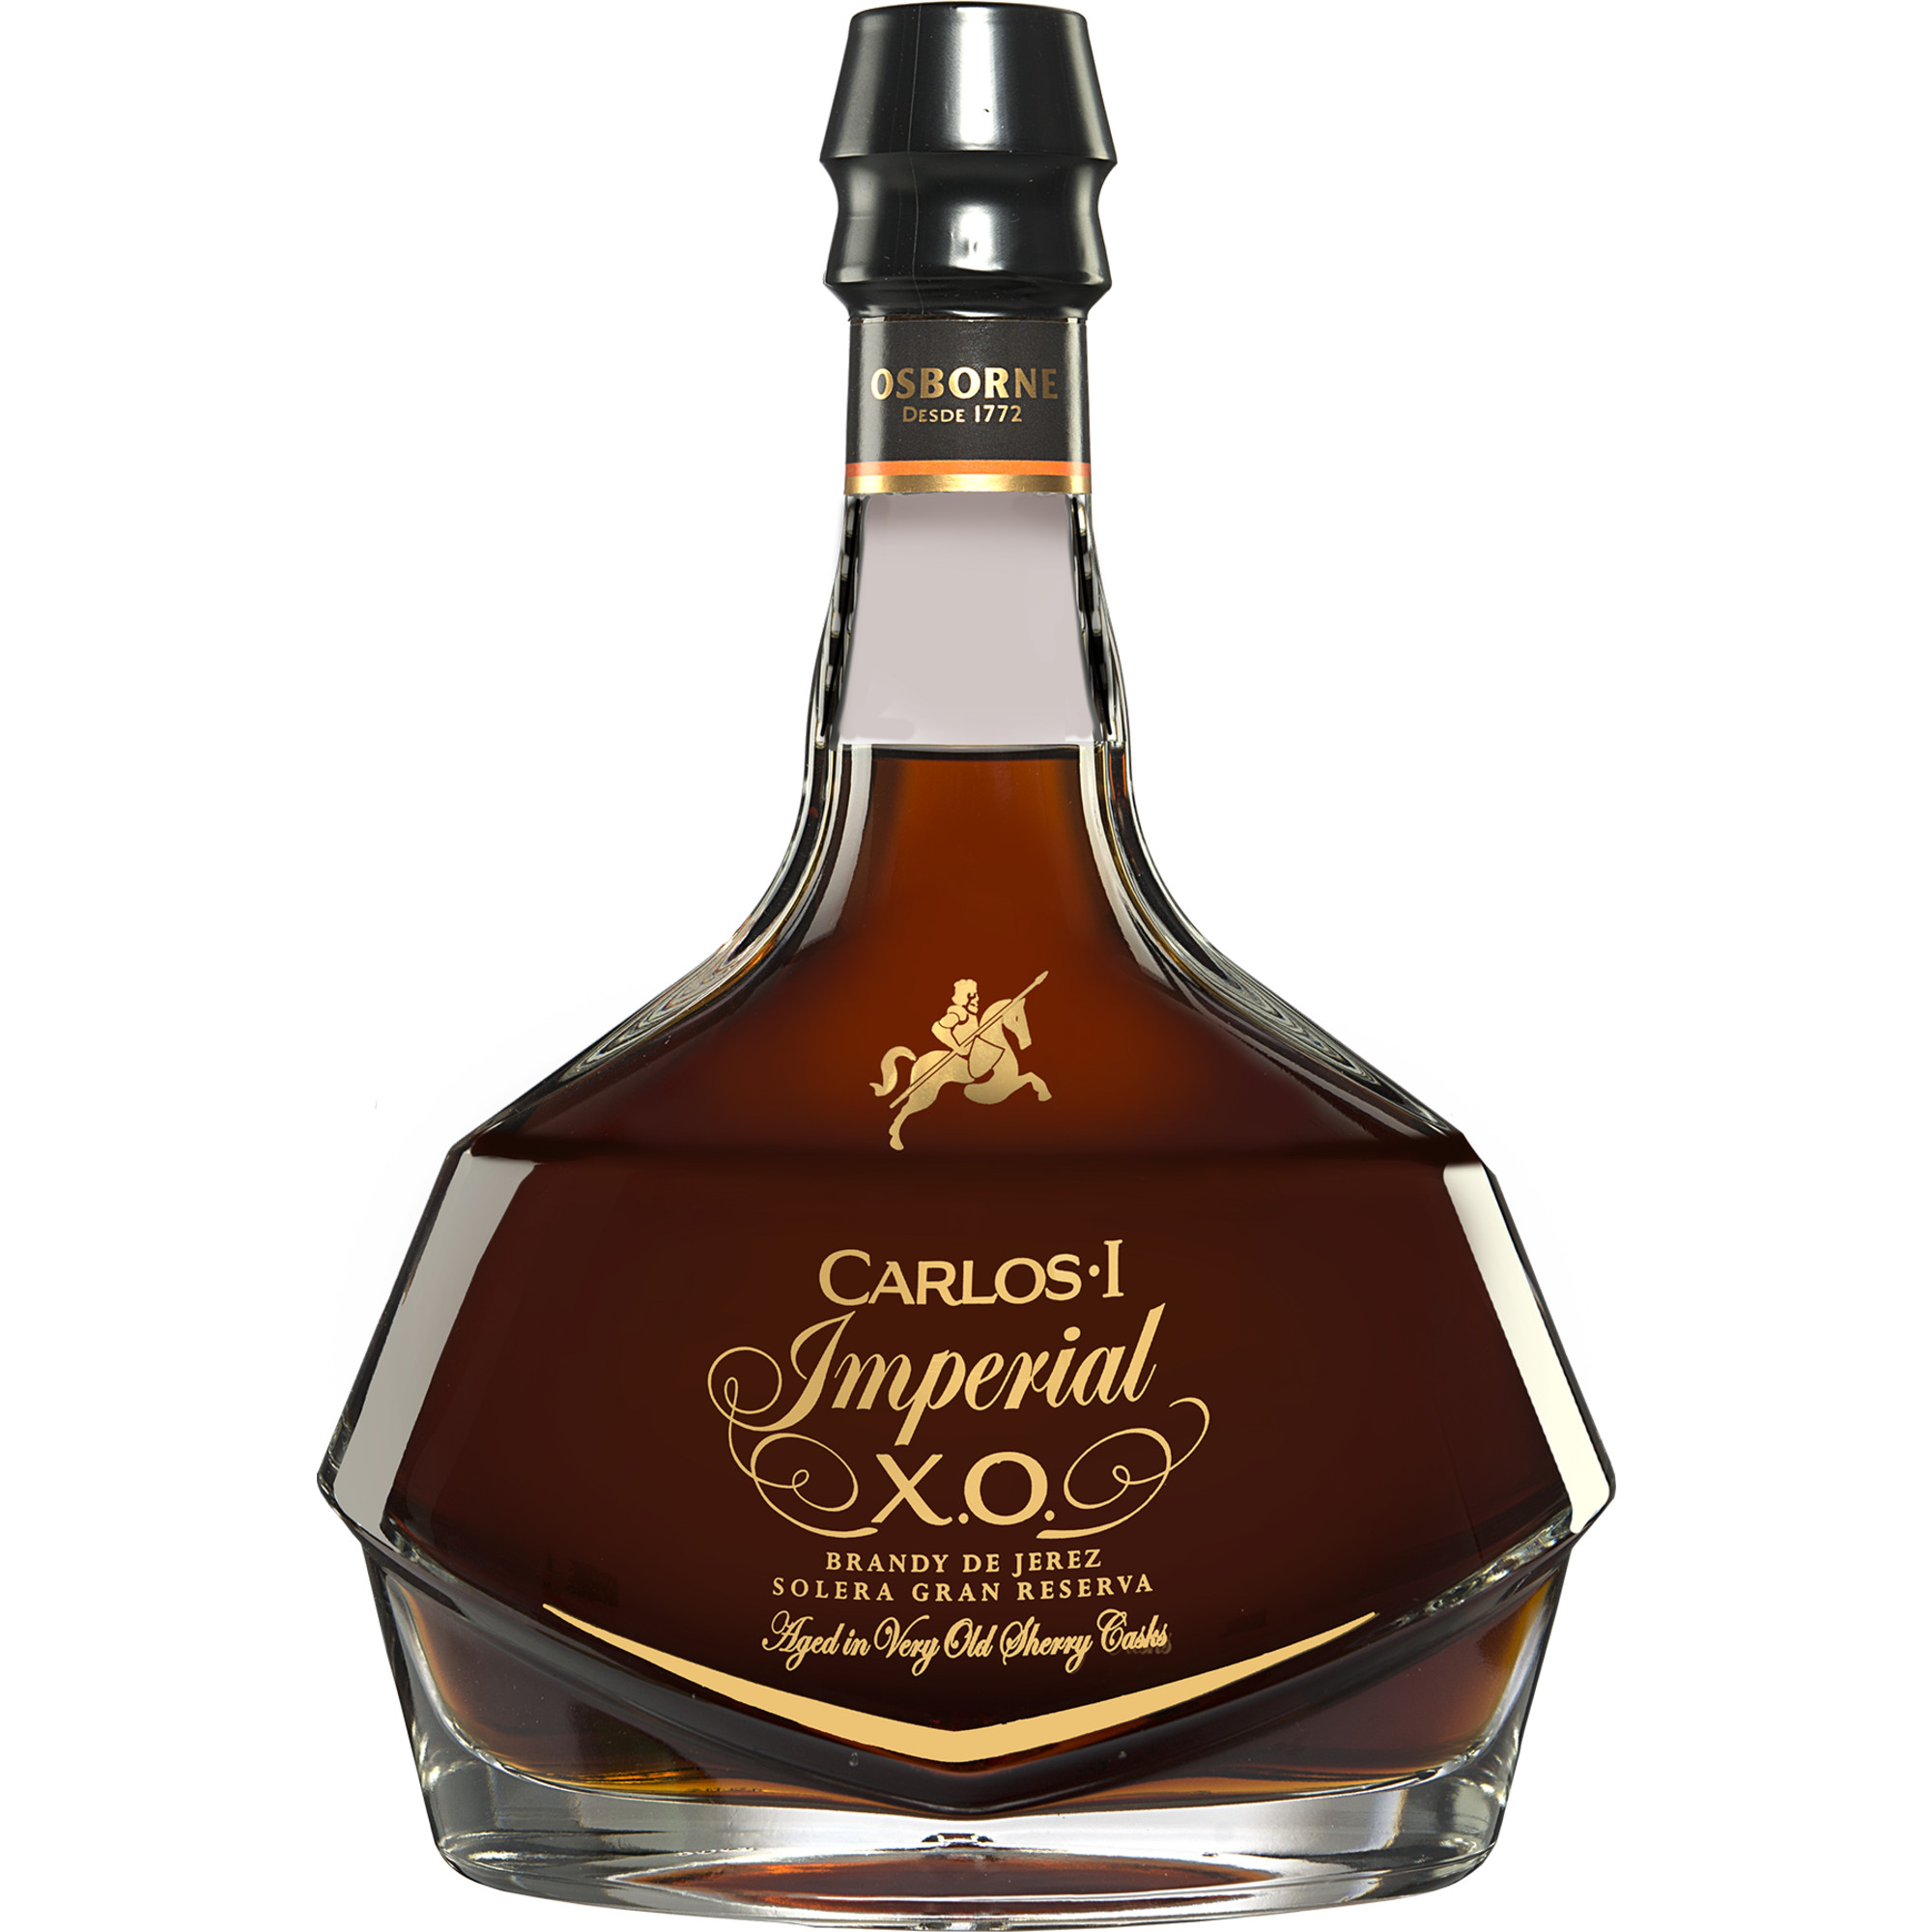 Brandy »Carlos I Imperial X.O.« Solera Gran Reserva - 0,7 L.  0.7L 40% Vol. Brandy aus Spanien